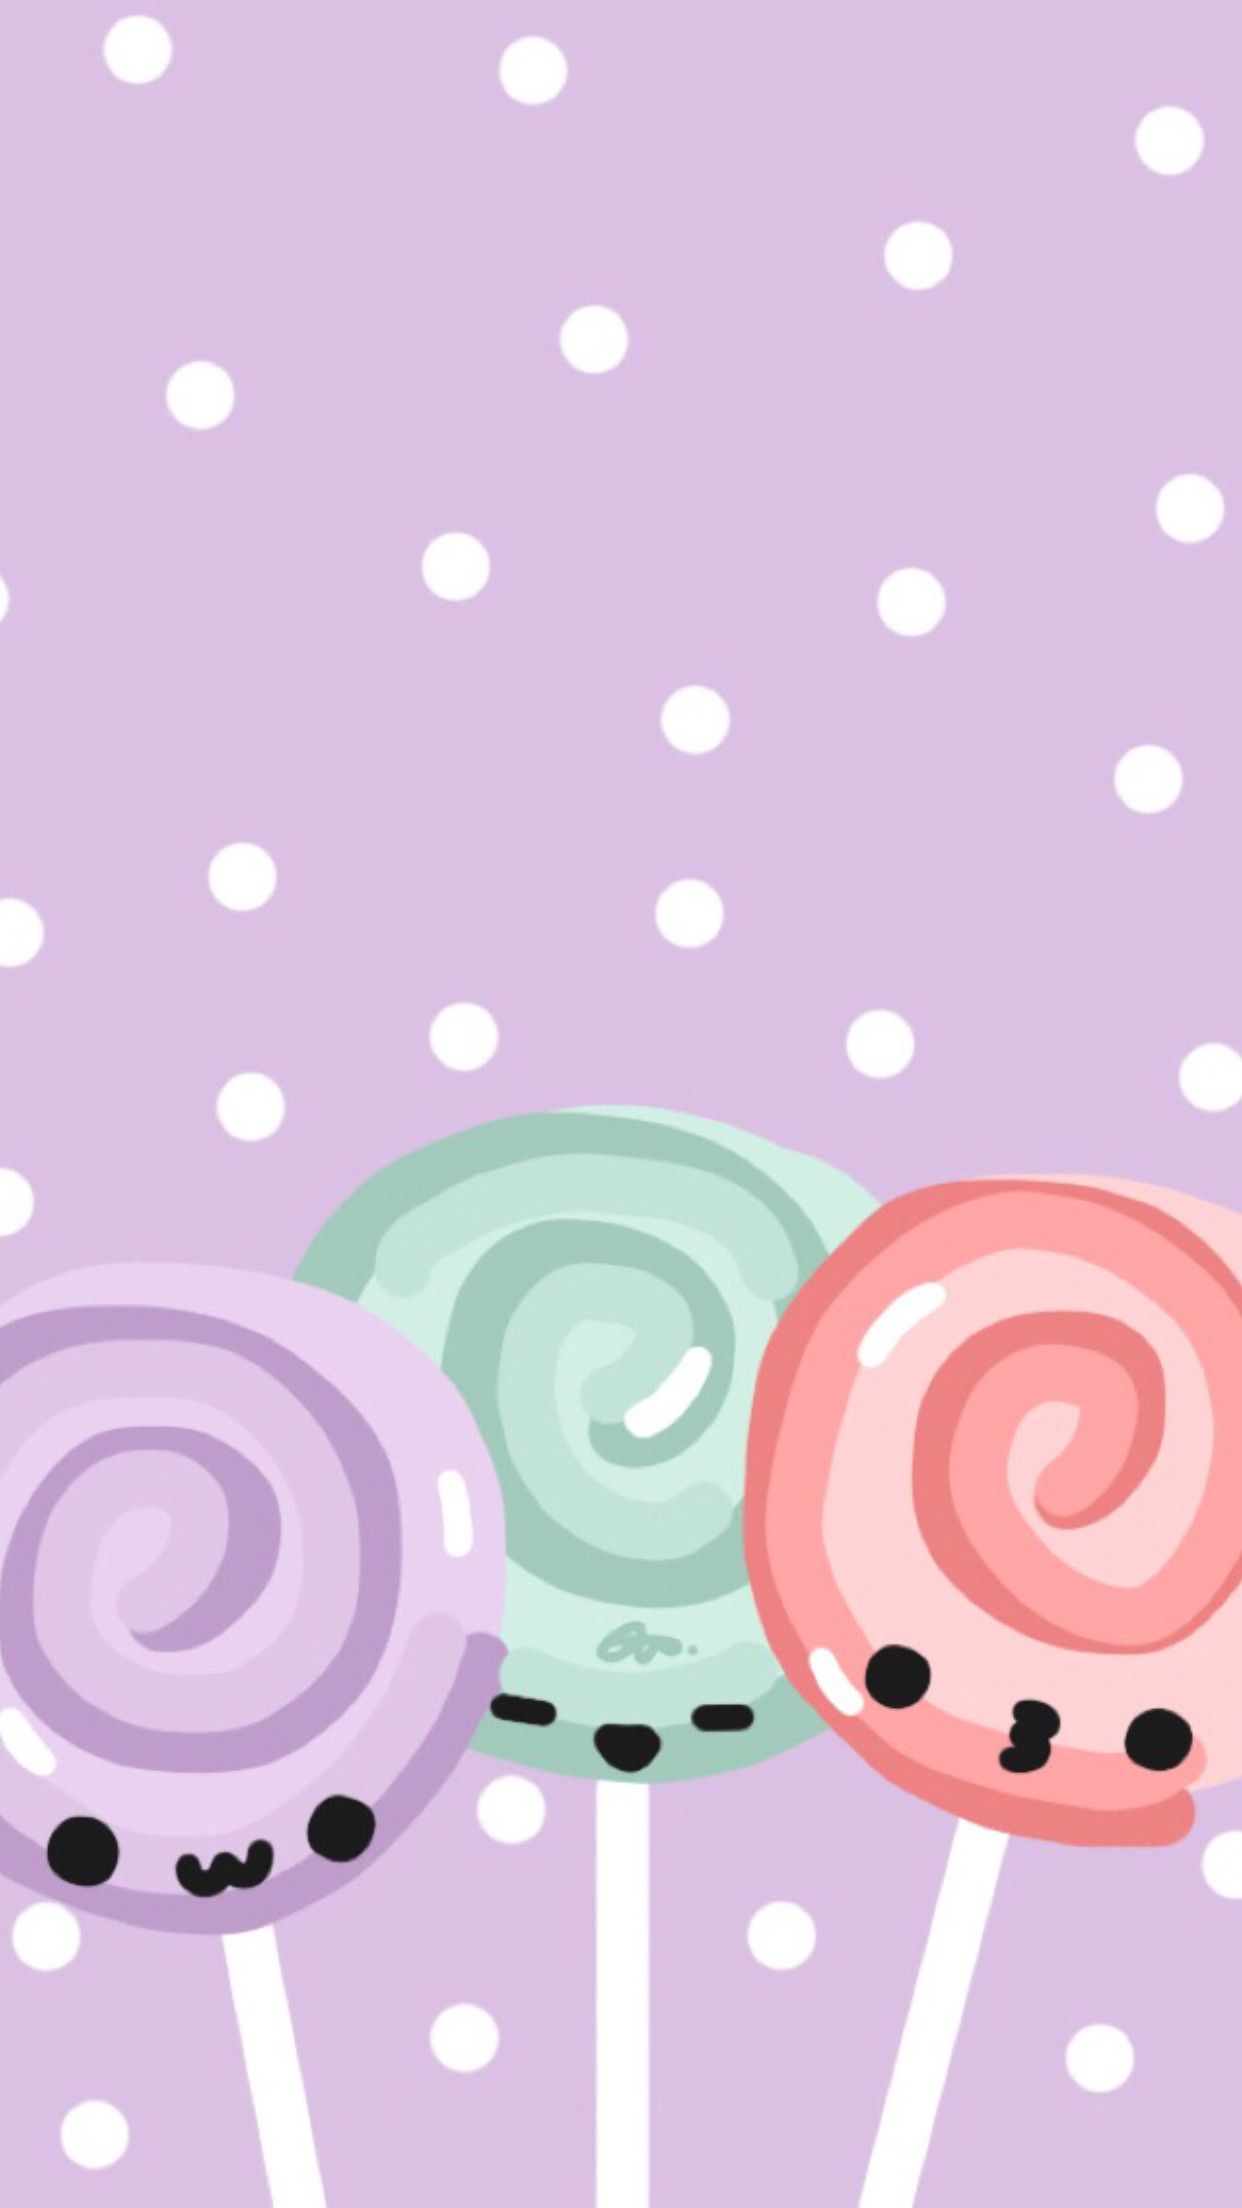 Cute Lollipop Wallpapers 4k Hd Cute Lollipop Backgrounds On Wallpaperbat